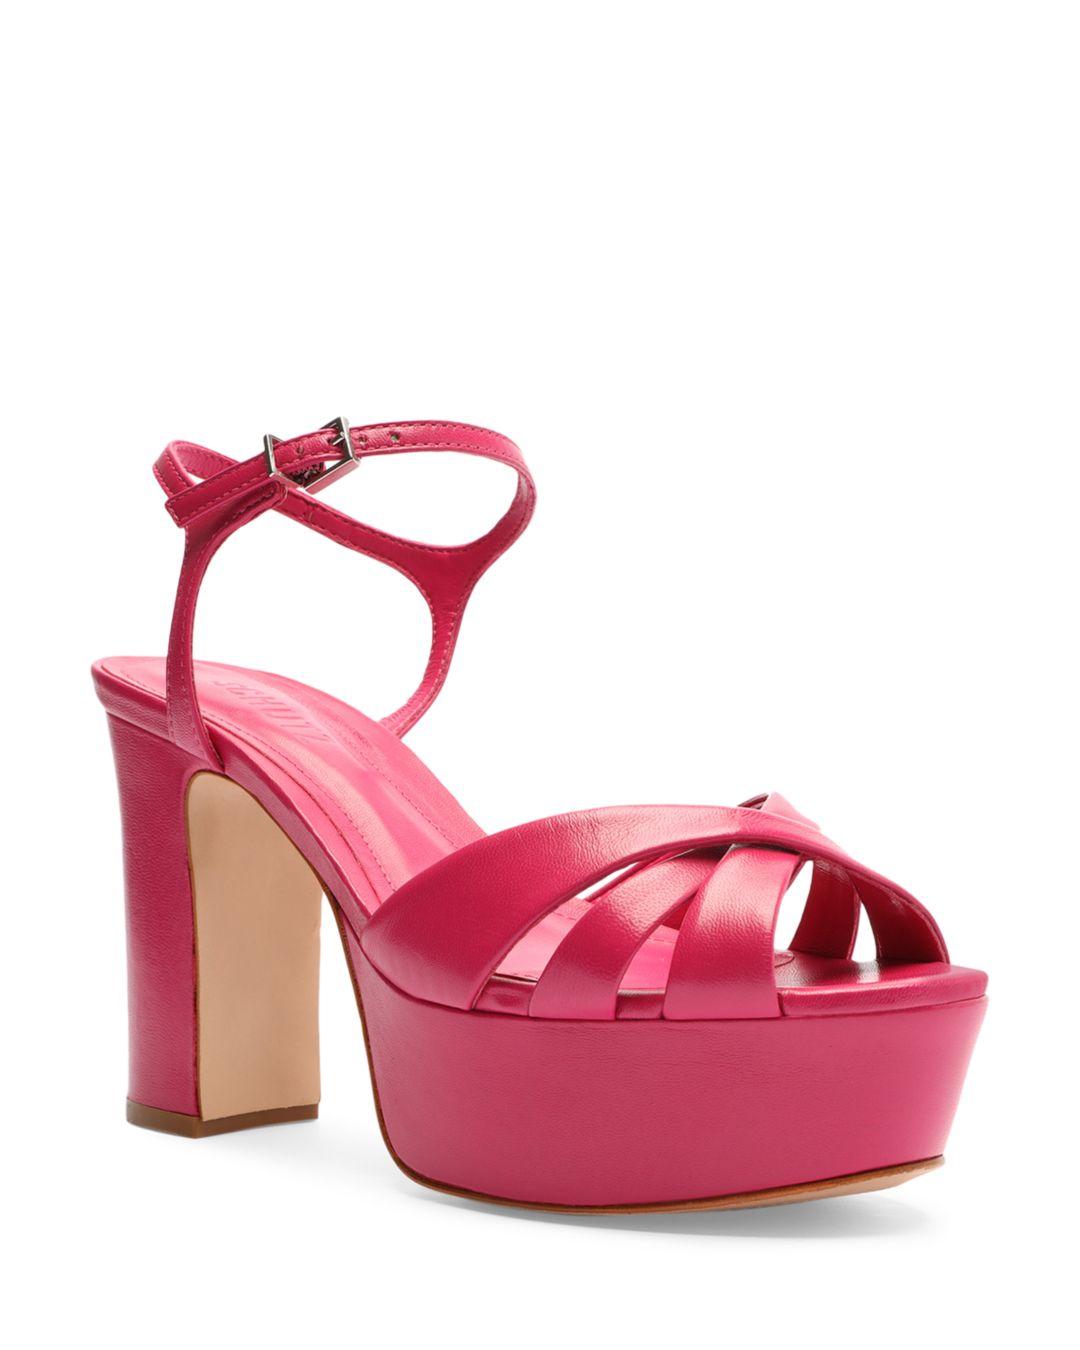 SCHUTZ SHOES Keefa Ankle Strap Slingback Platform Sandals in Pink | Lyst